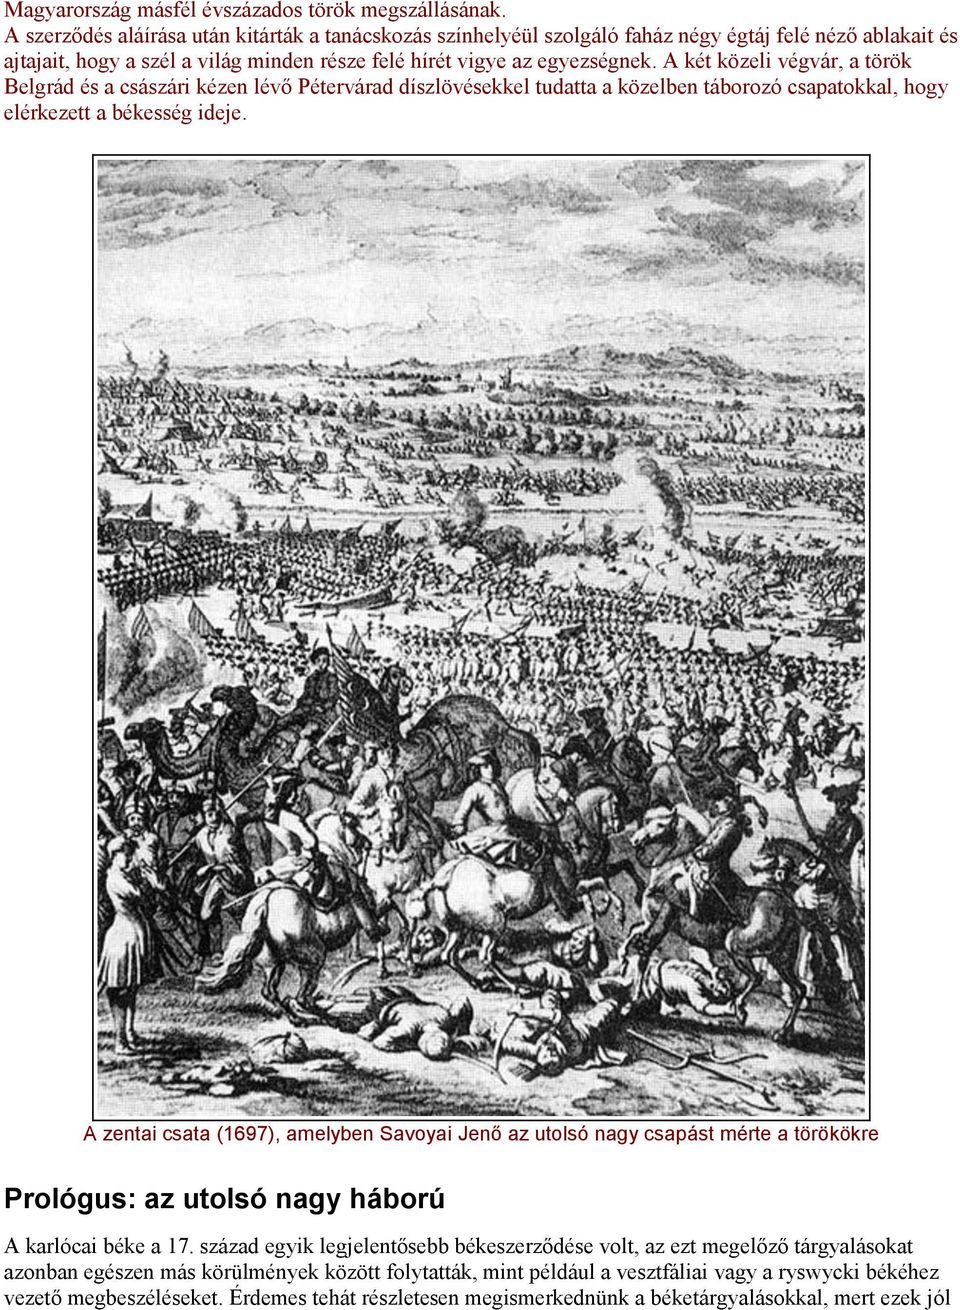 A két közeli végvár, a török Belgrád és a császári kézen lévő Pétervárad díszlövésekkel tudatta a közelben táborozó csapatokkal, hogy elérkezett a békesség ideje.